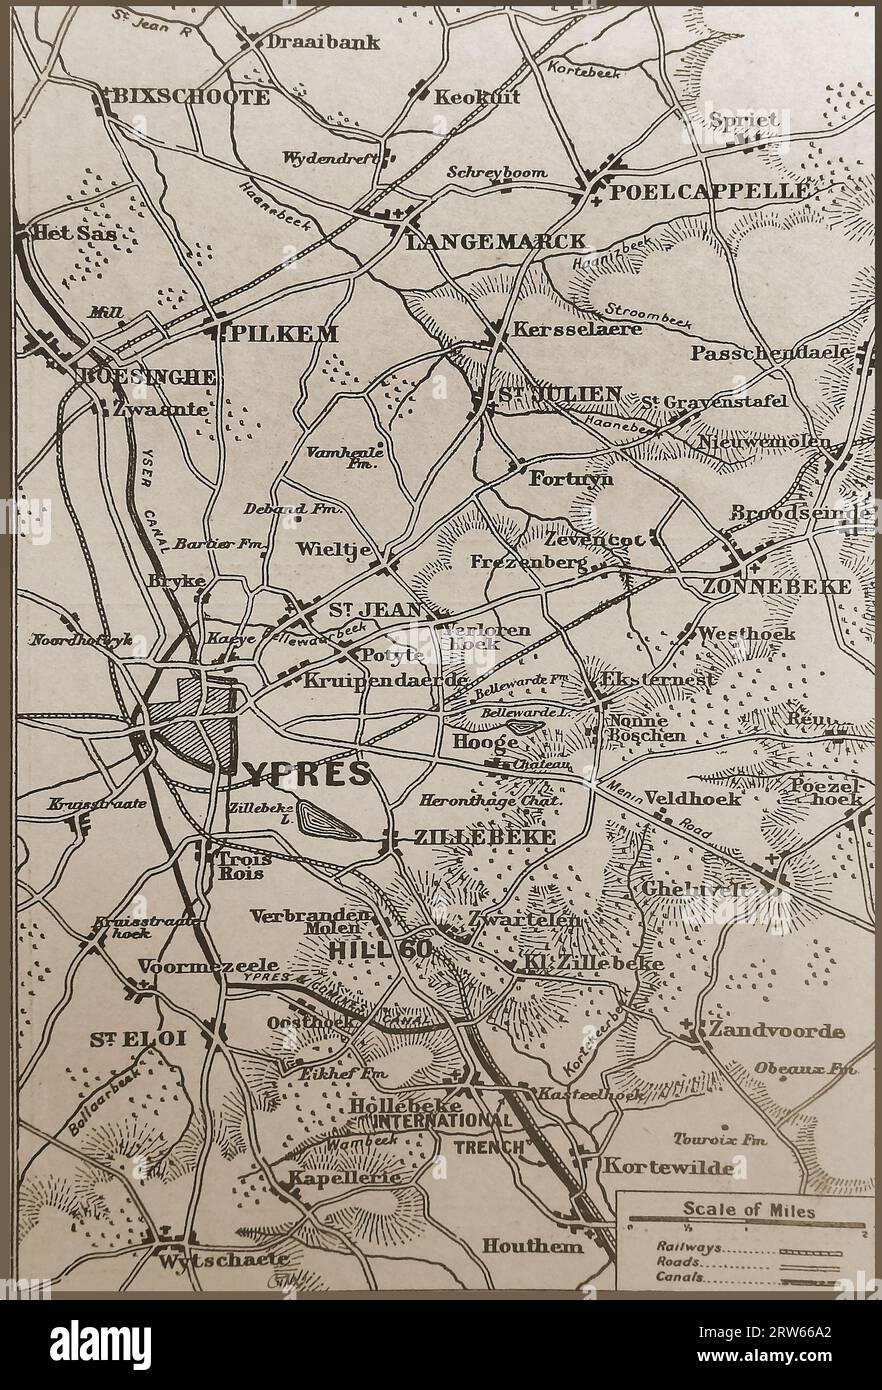 WWI carte de la région d'Ypres et de la région connue sous le nom de International Trench - Karte des Ypern-Gebiets und des als Internationaler Graben bekannten Gebiets aus dem Ersten Weltkrieg -carte de la première Guerre mondiale de la région d'Ypres et de la zone connue sous le nom de tranchée internationale Banque D'Images